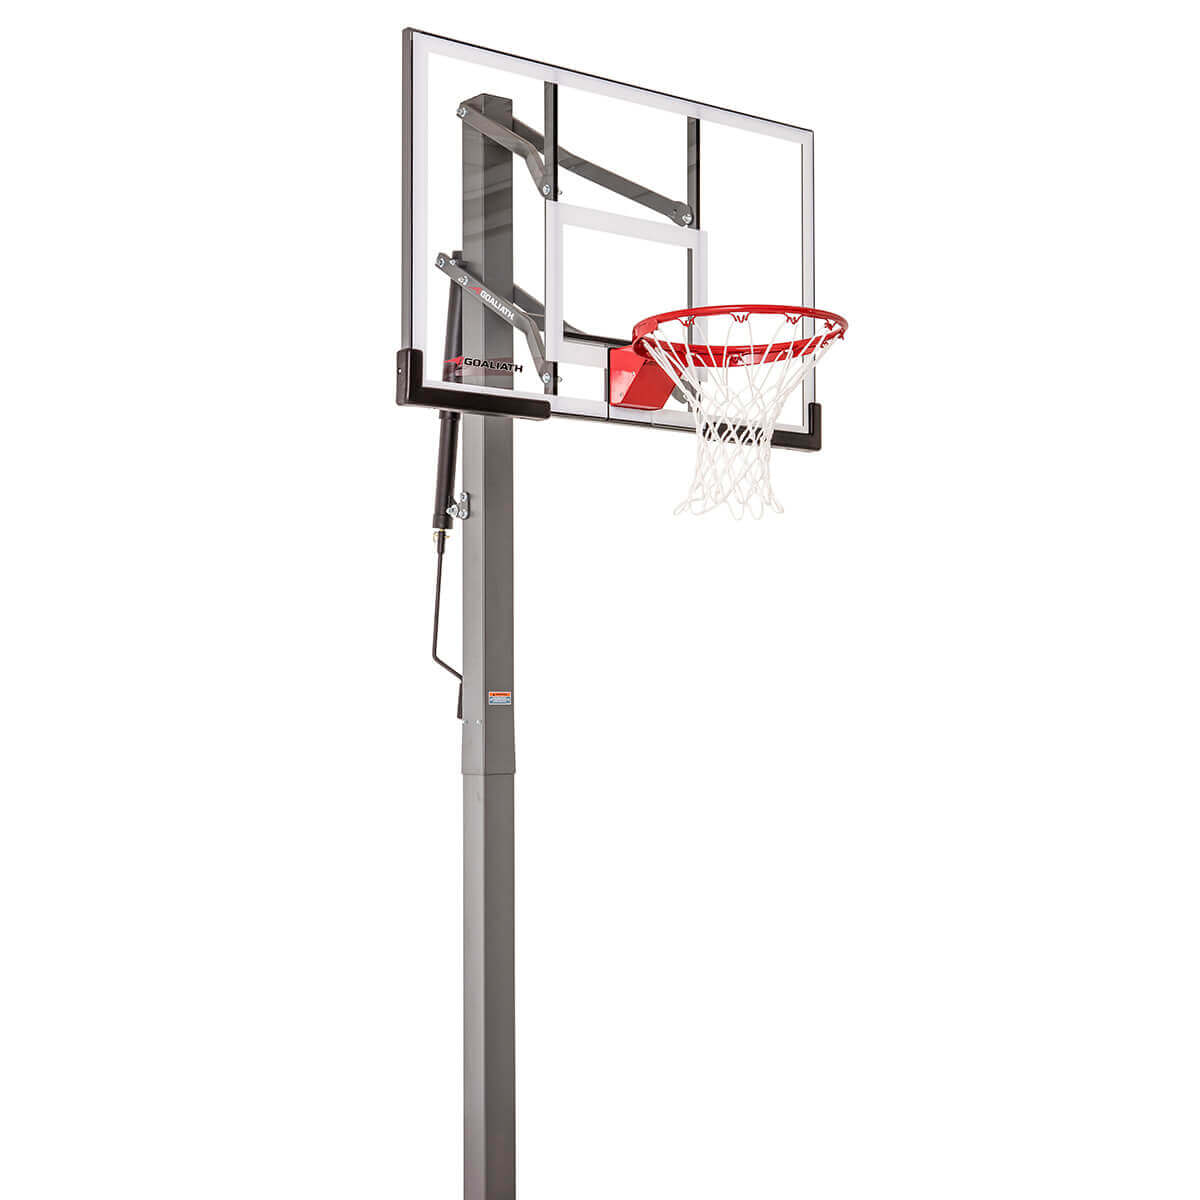 VEVOR Panier de Basket Extérieur Intérieur Portable Réglable en